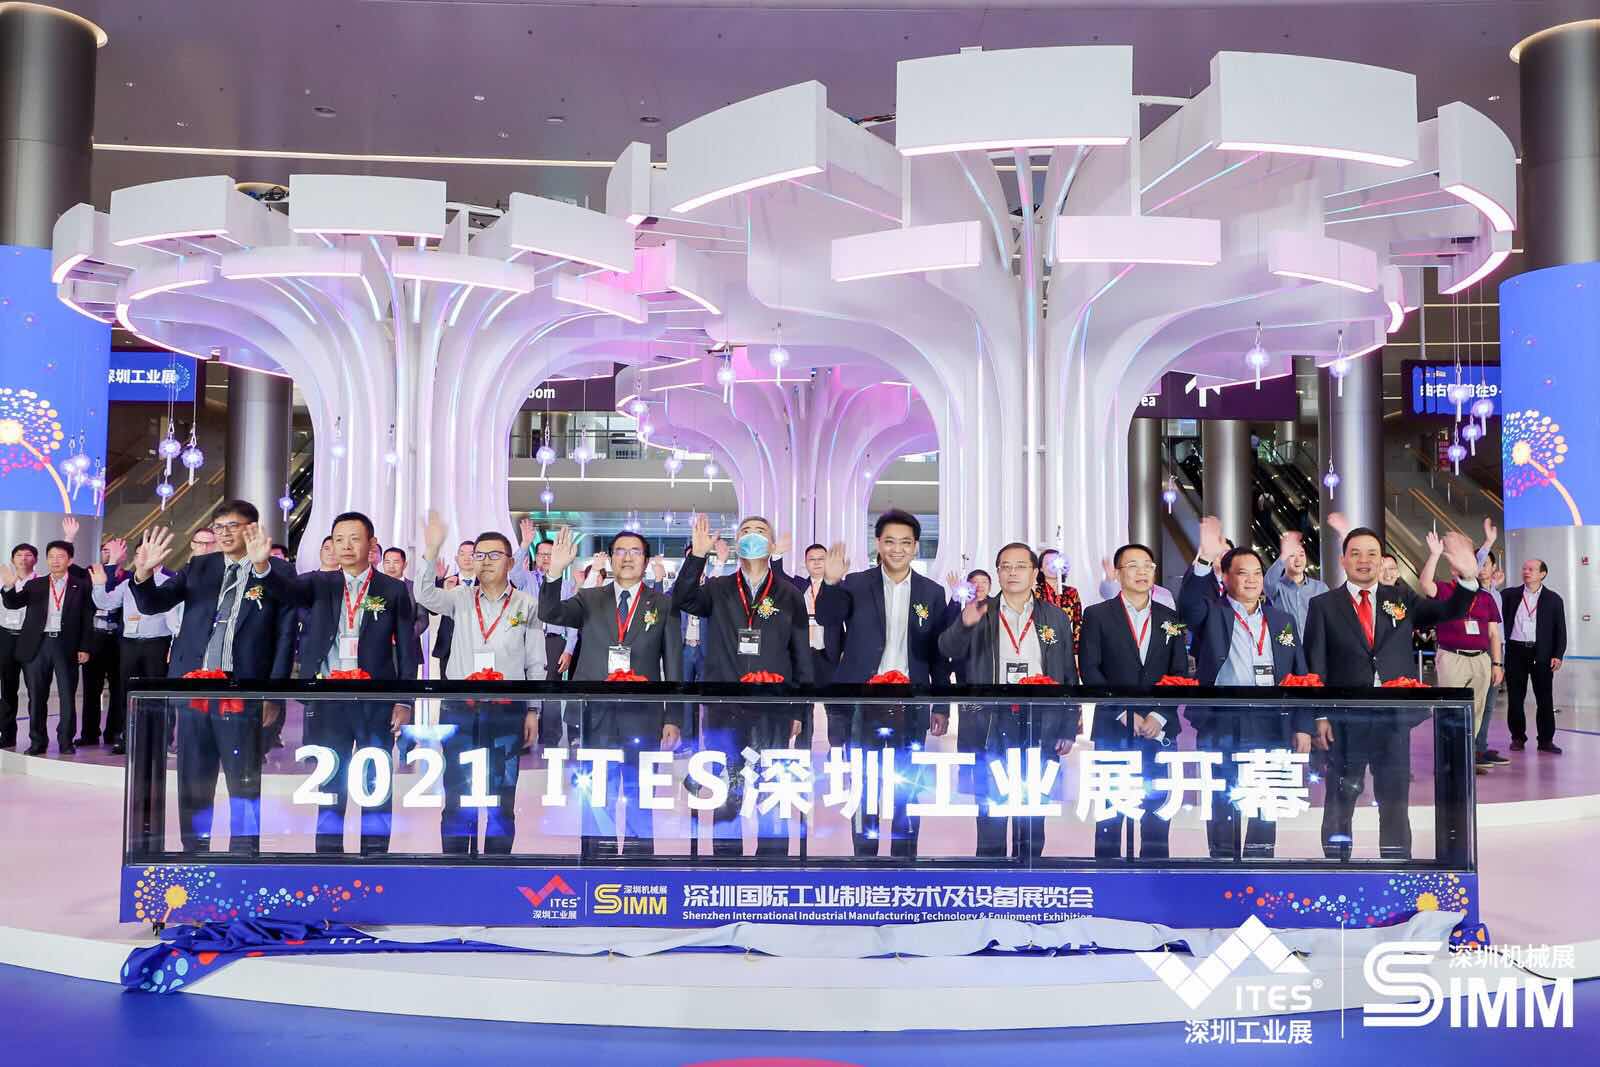 传播制造思想，推动工业进步 | 2021 ITES深圳工业展今日启幕